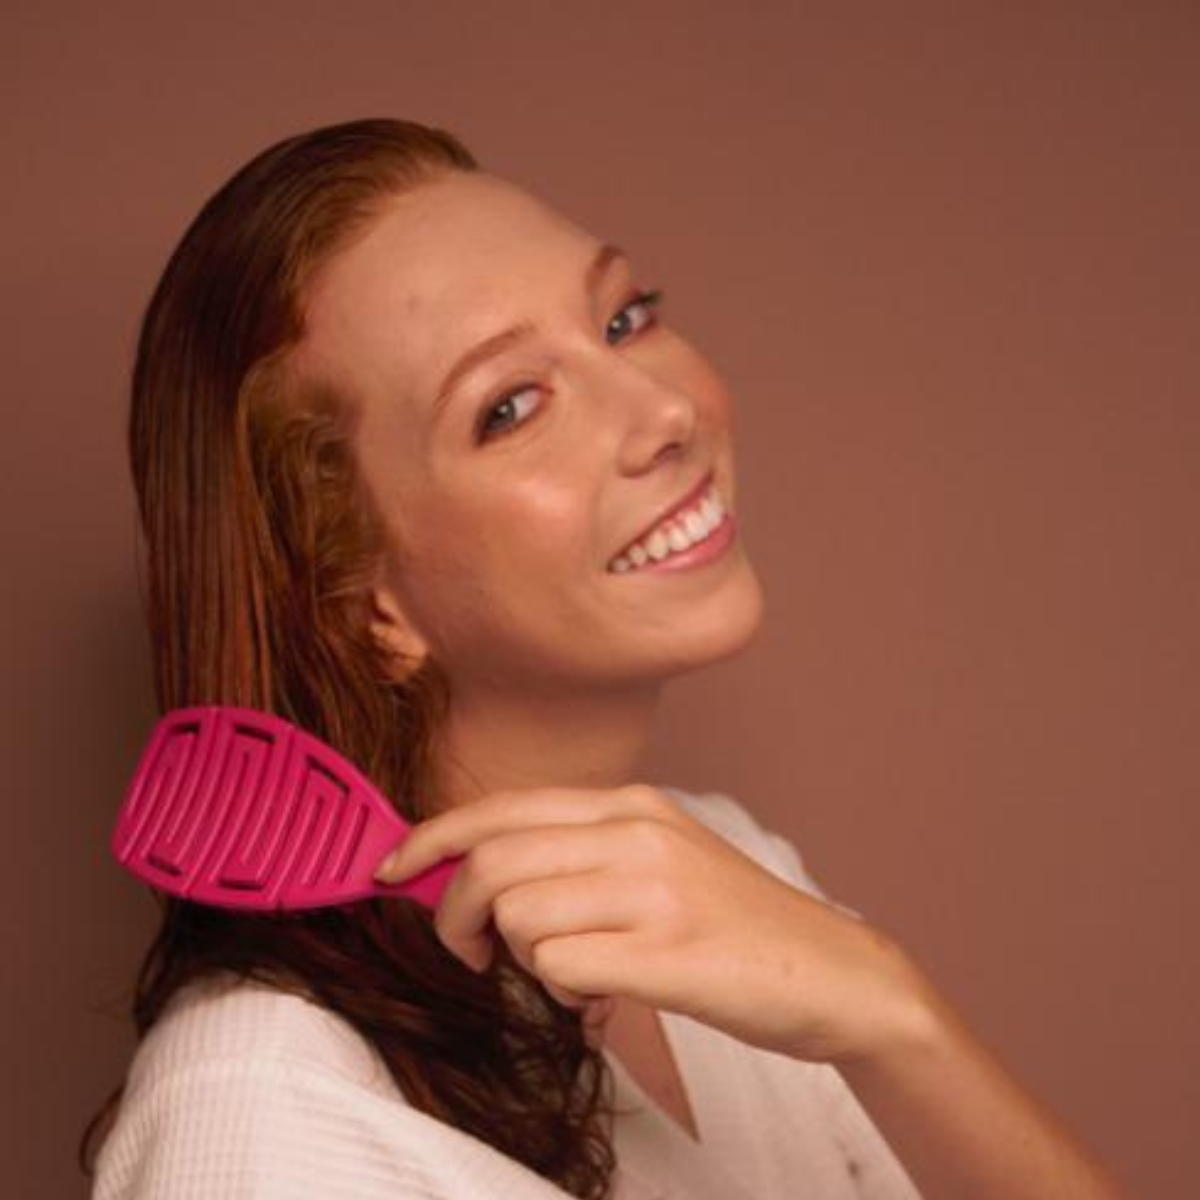 Juego de cepillos para el cabello Dompel Maya - Juego de 4 piezas (verde, rosa, púrpura, negro) - Cepillo antiestático para todo tipo de cabello.